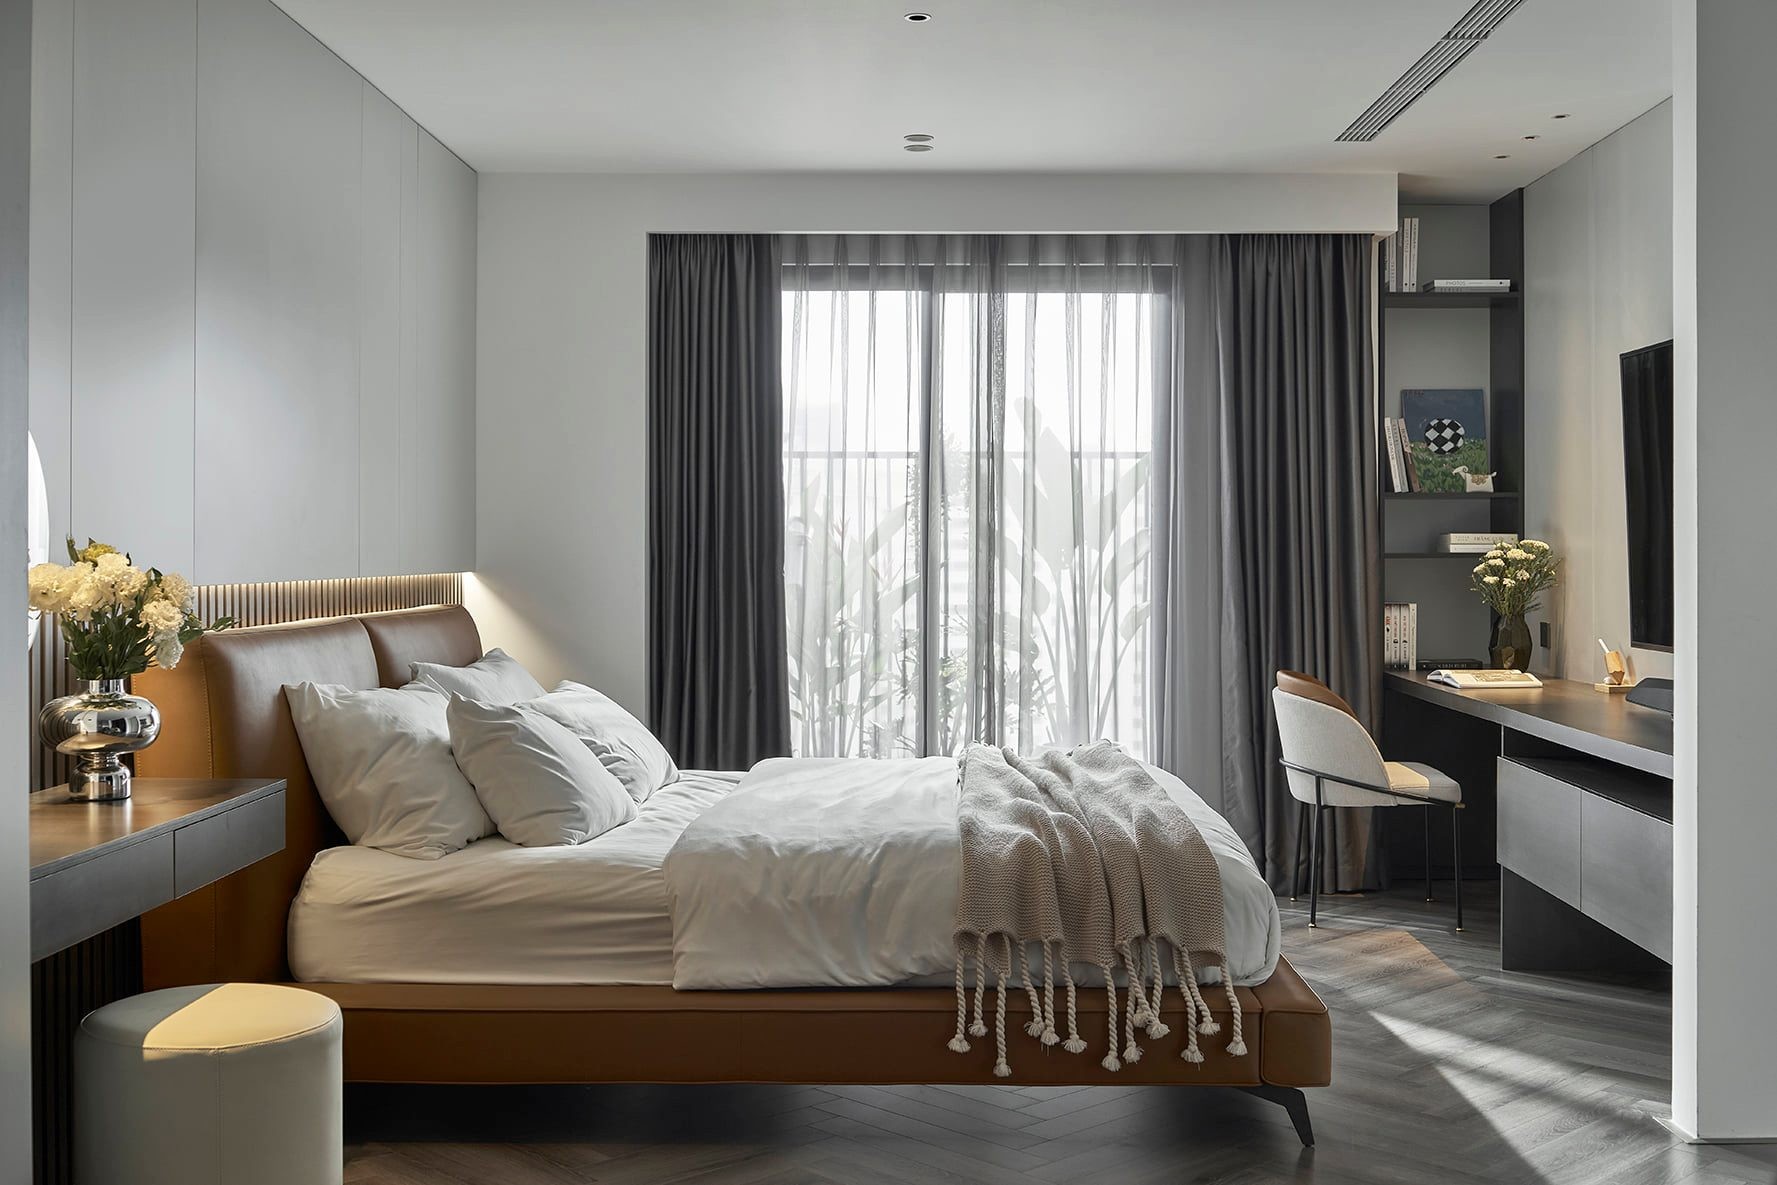 
Phòng ngủ chính của căn hộ với thiết kế tối giản nhưng đầy tính thẩm mỹ
